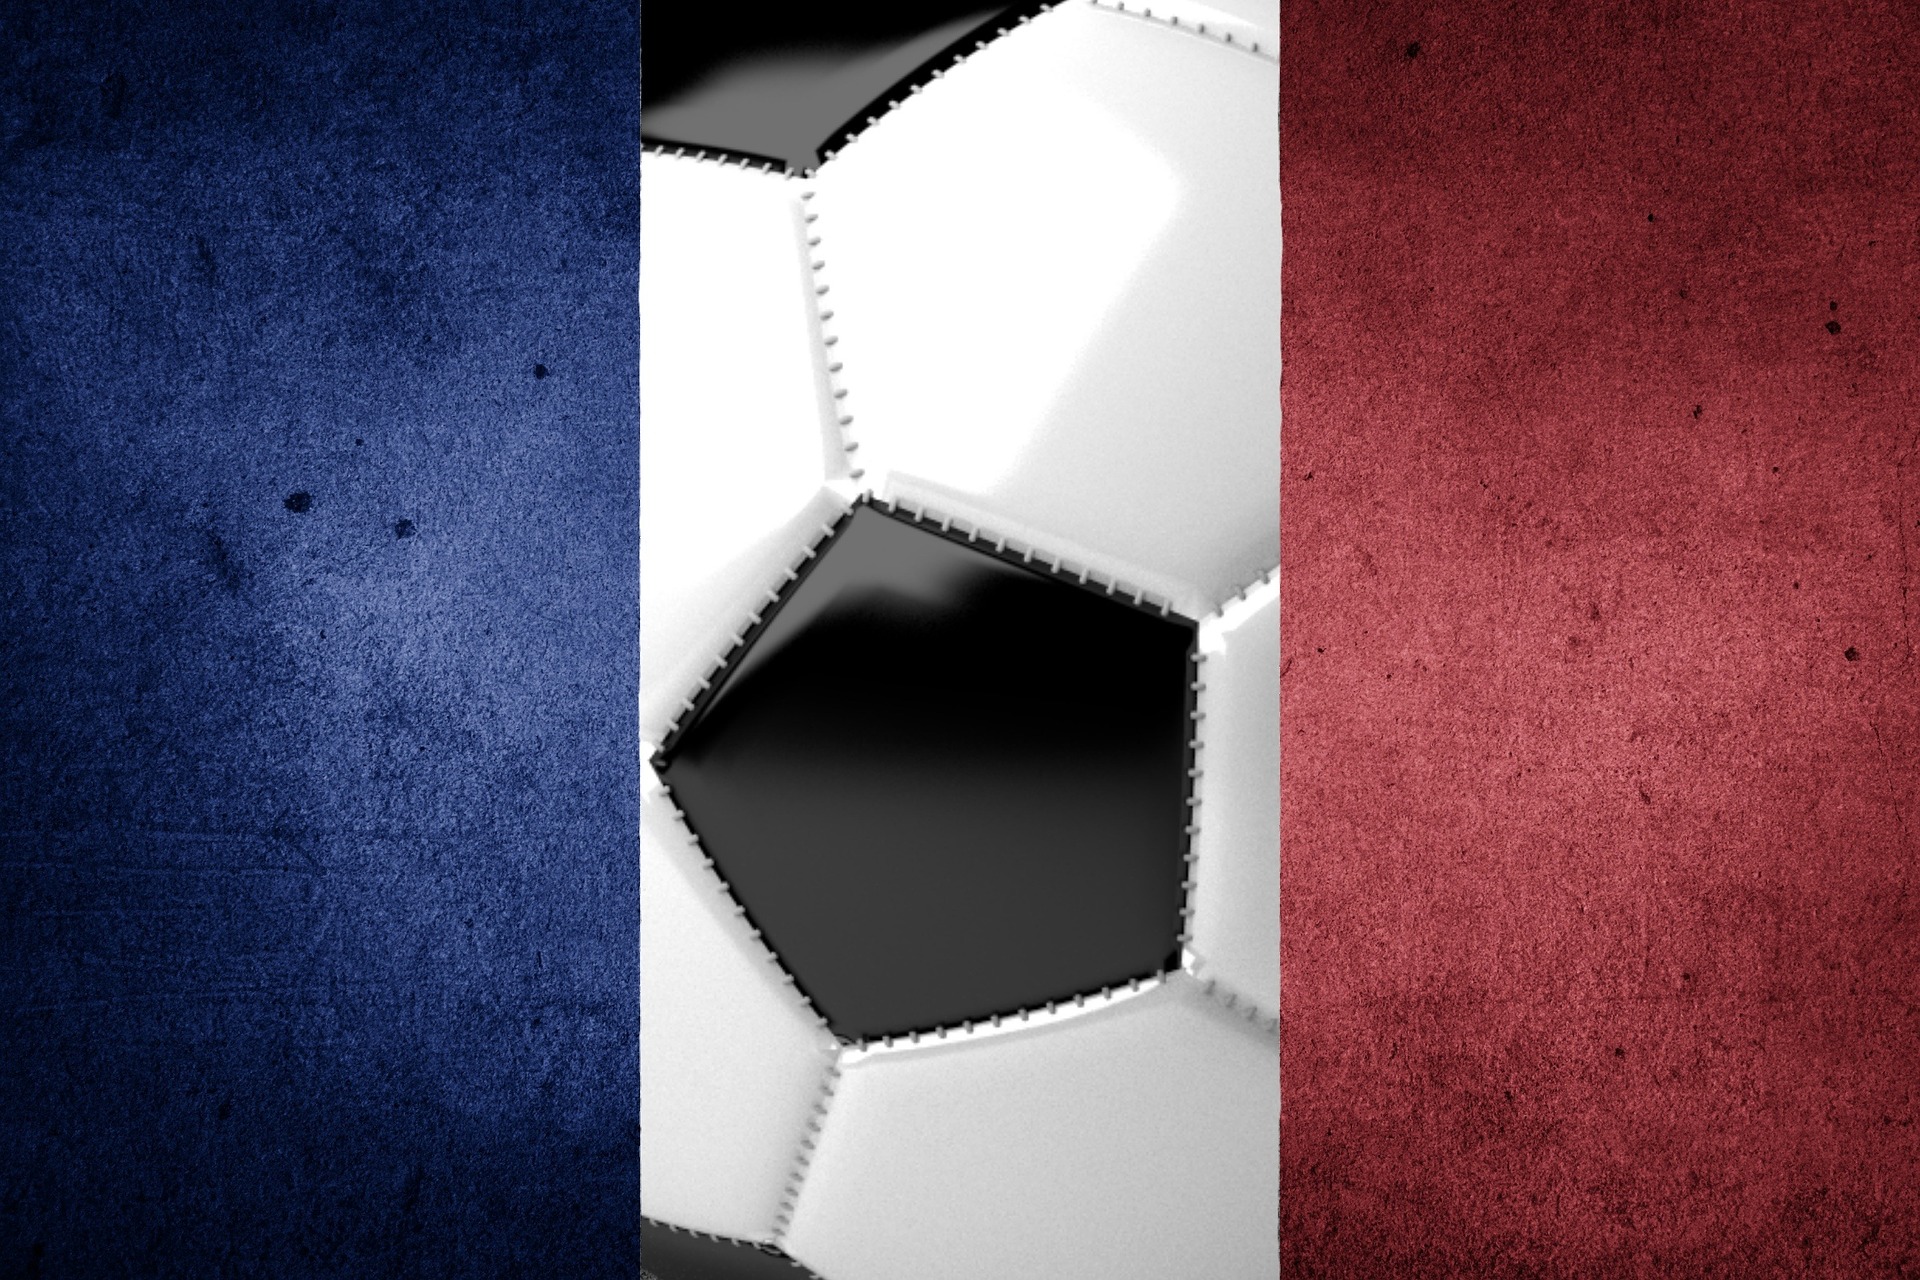 Triumf Olympique Marsylia rezultatem 2:1 we francuskich rozgrywkach i genialne trafienie Arka Milika! 